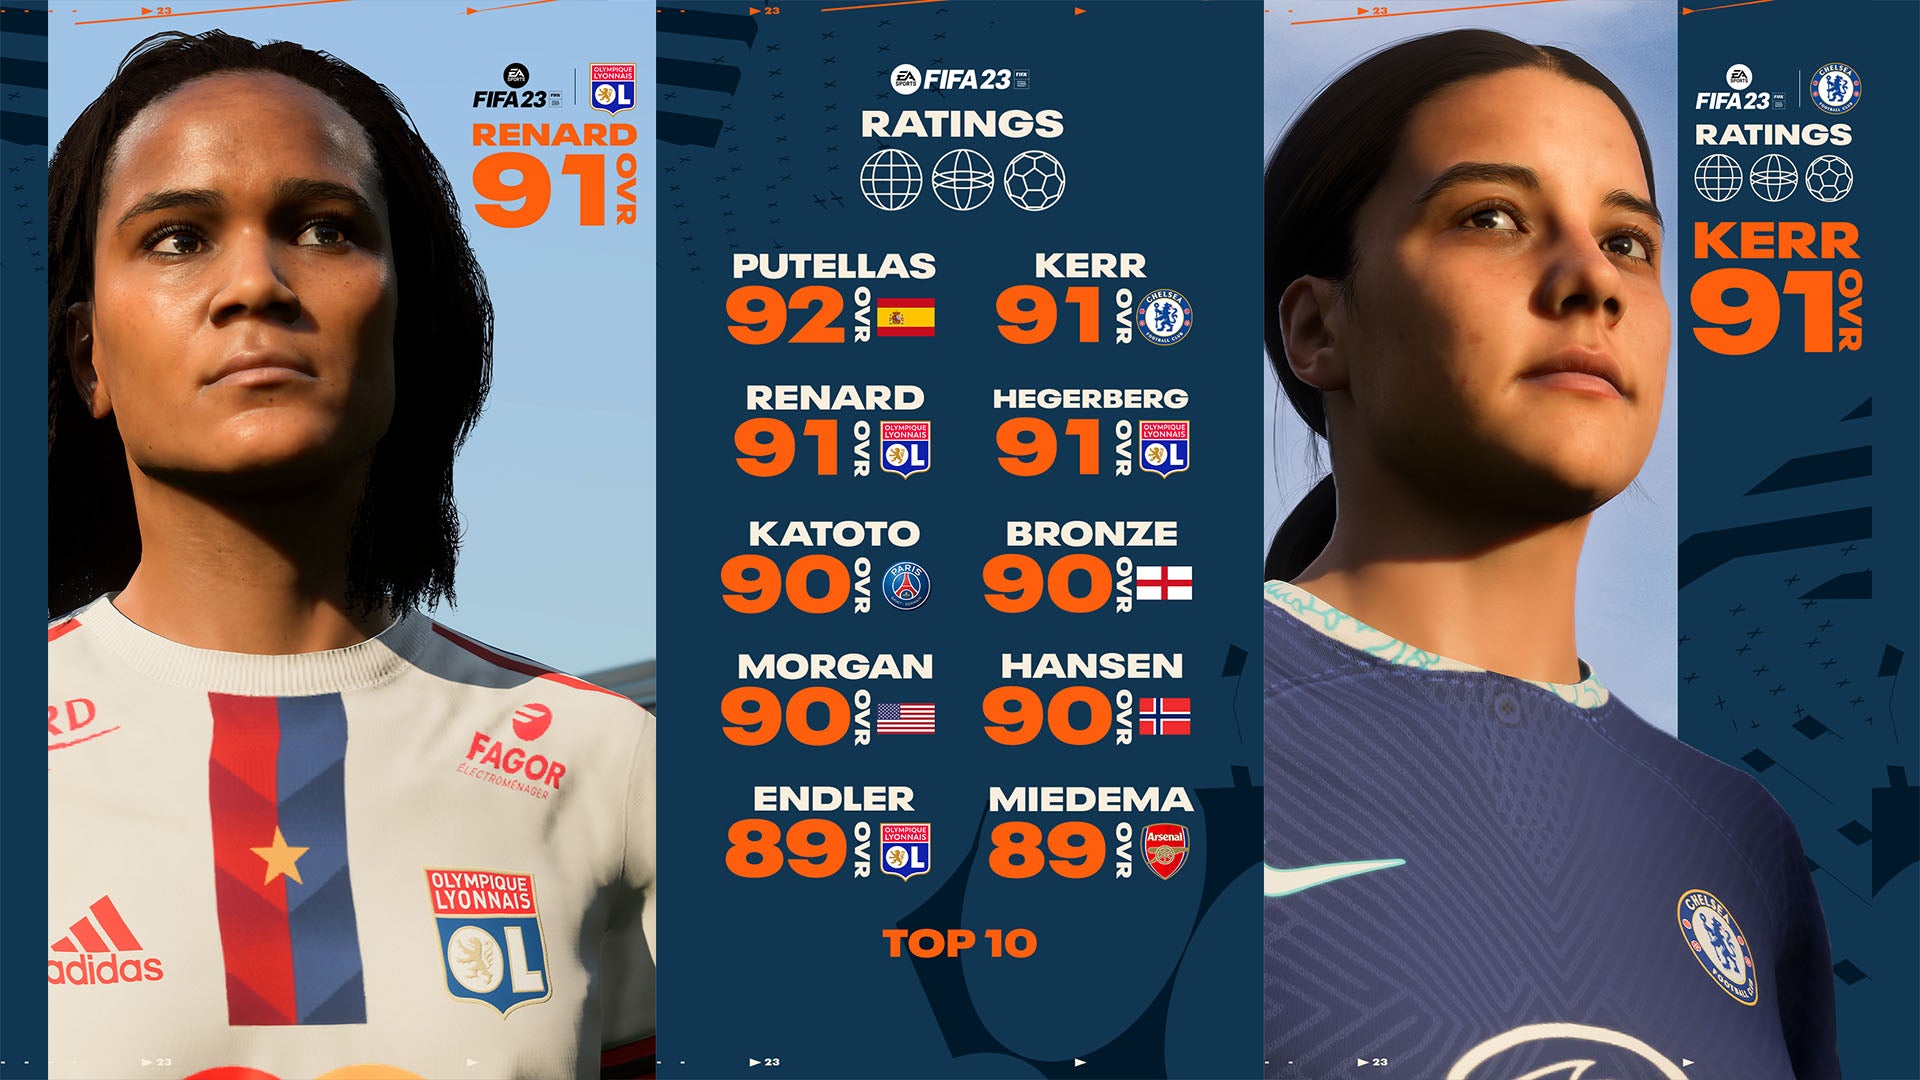 Bilder zu FIFA 23 Ratings: EA Sports stellt die 25 besten Spielerinnen und ihre Werte vor